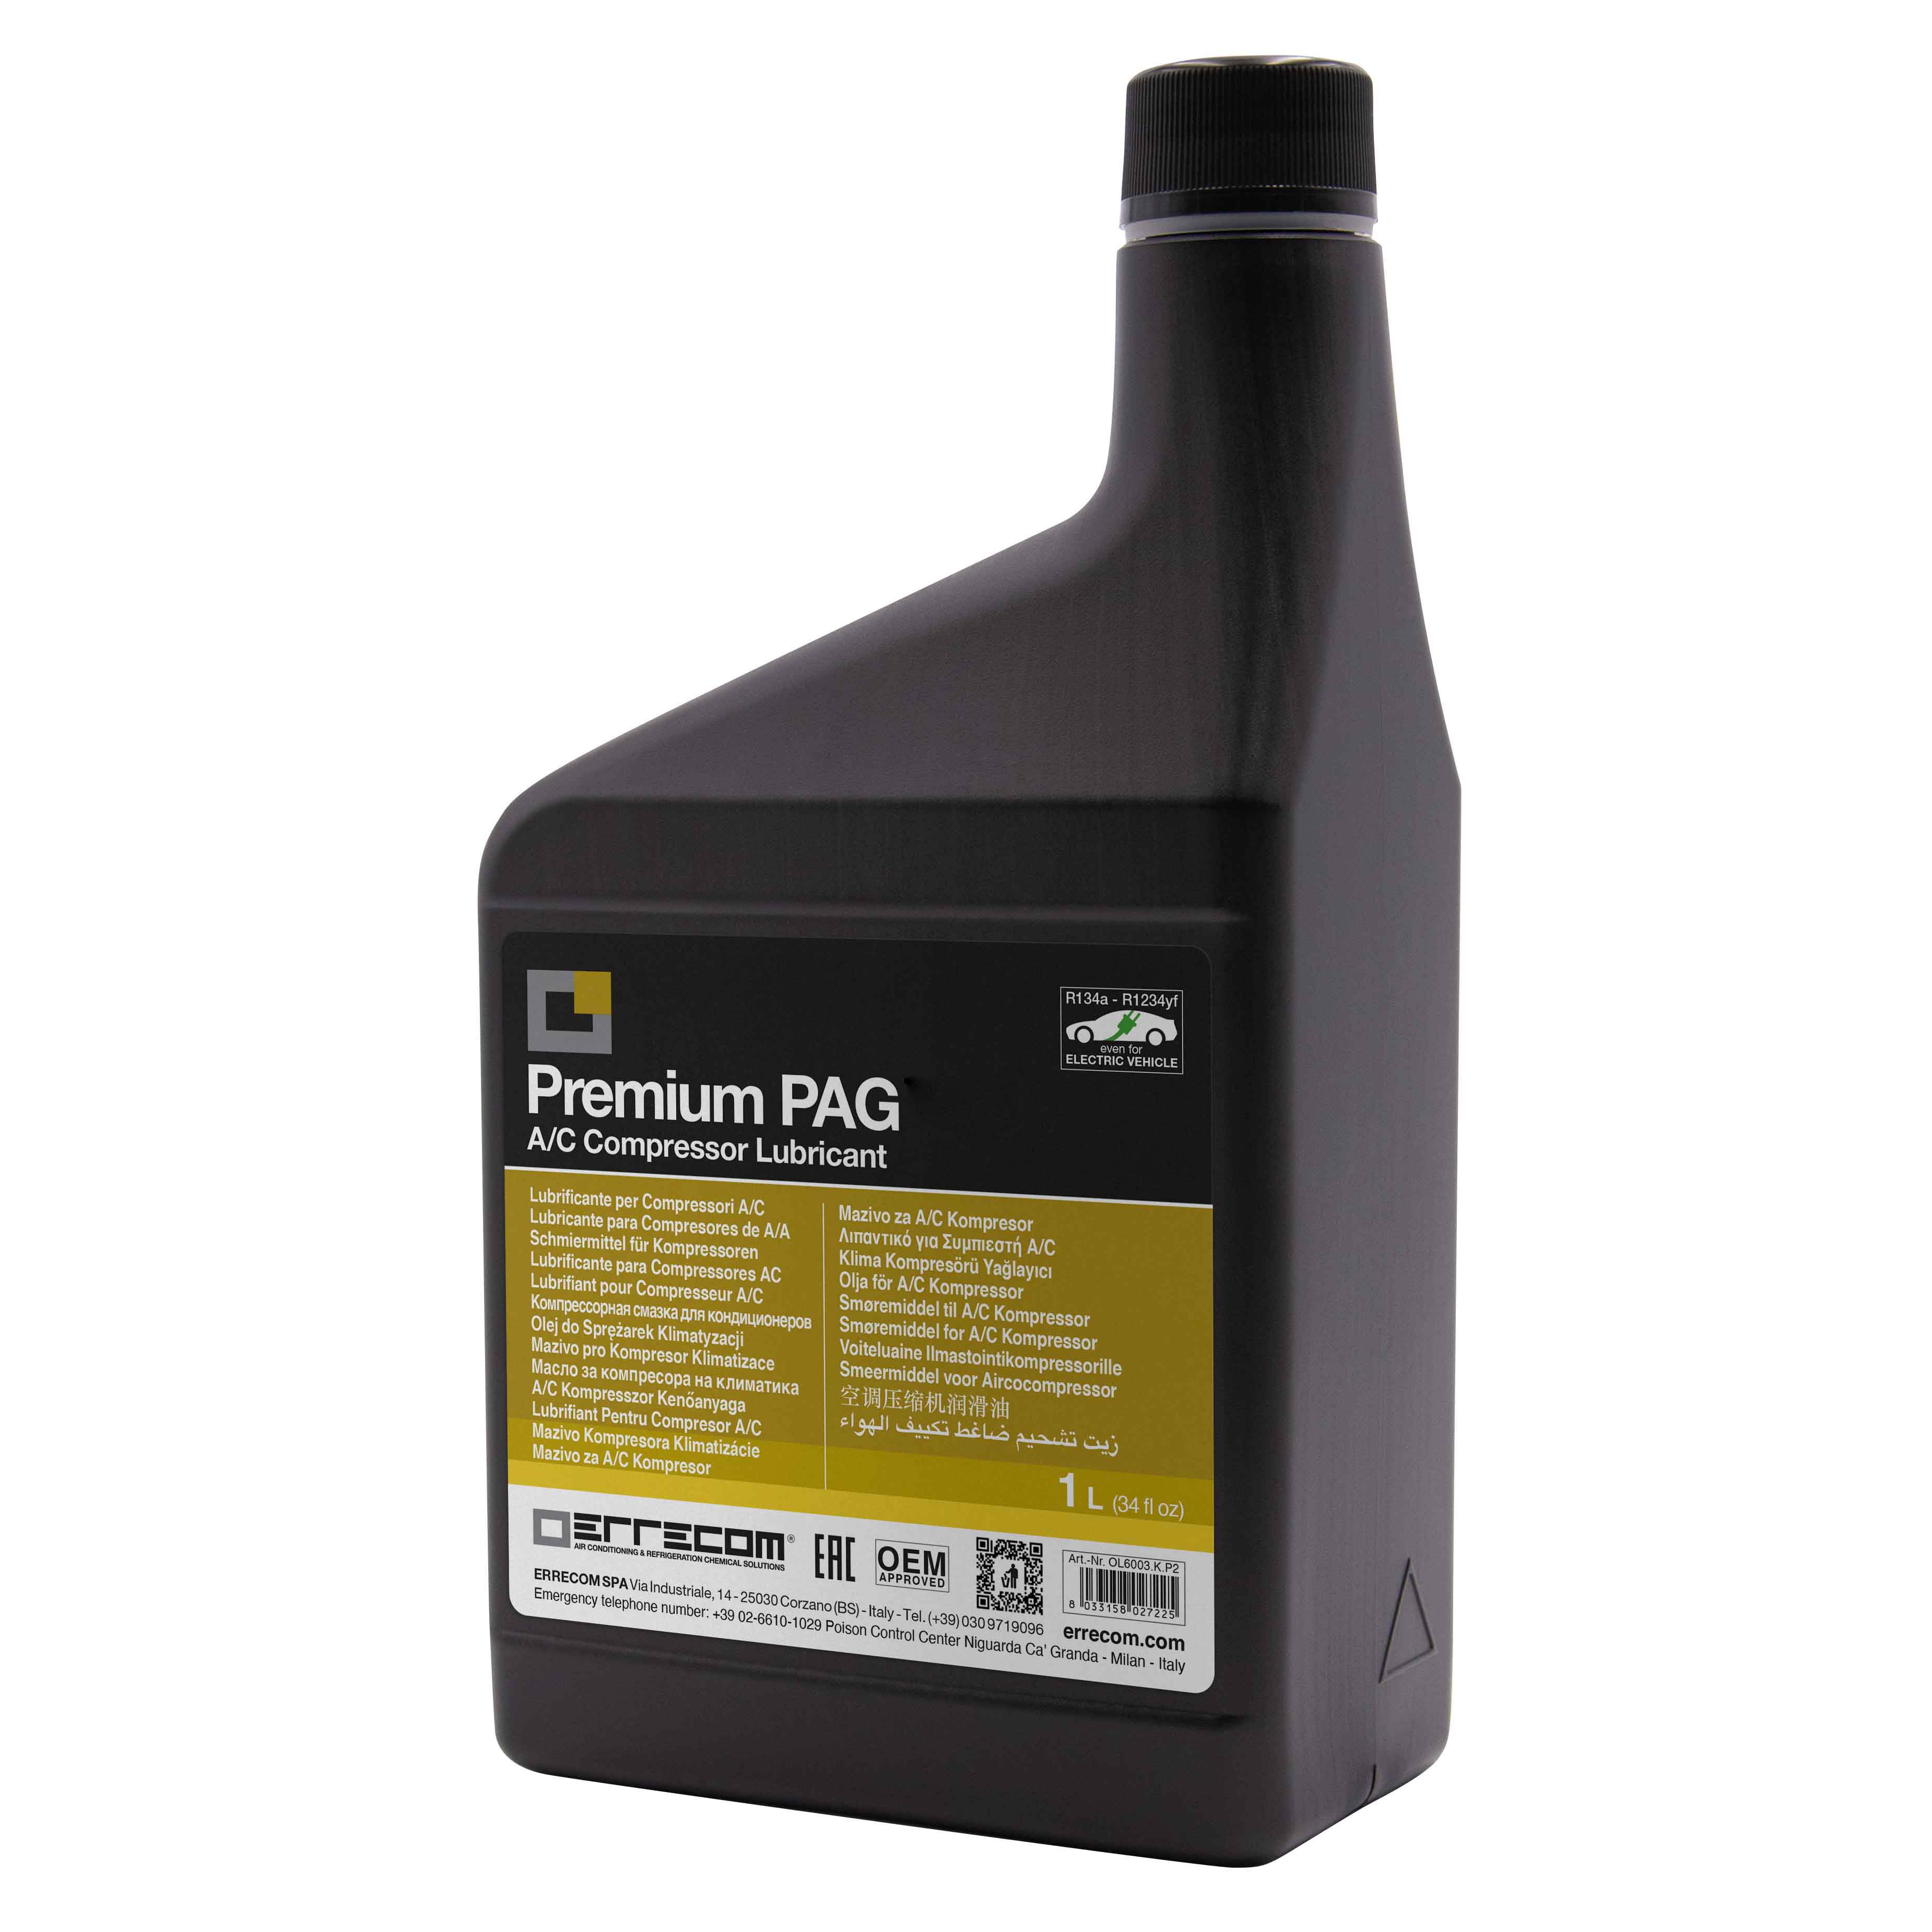 12 x Olio lubrificante AUTO PREMIUM PAG 46 + DYE (tracciante UV) - Tanica in Plastica da 1 litro - Confezione n° 12 pz. (totale 12 litri)